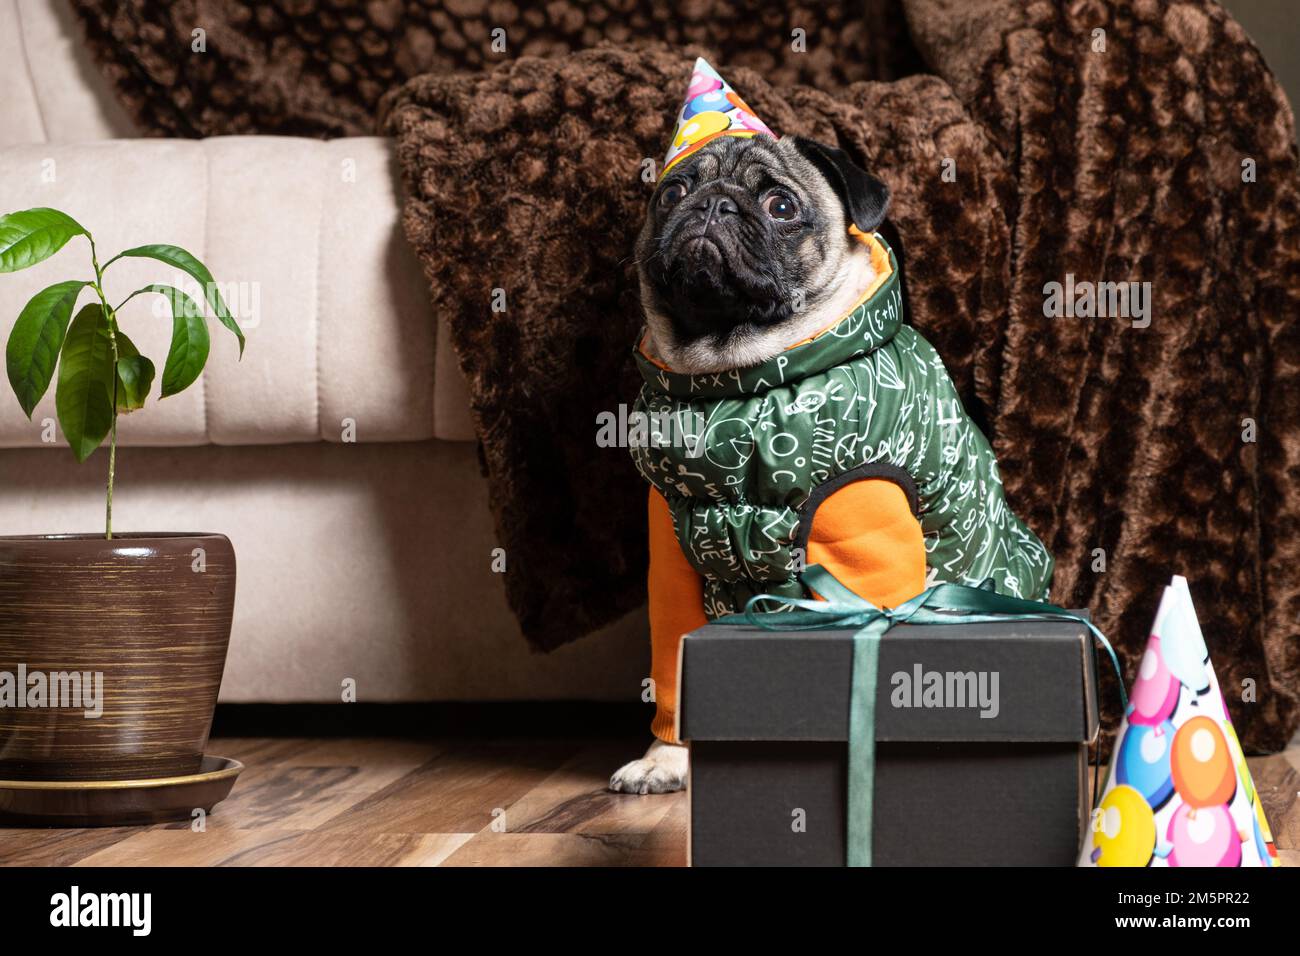 Un petit pug dans une casquette et un costume de fête se trouve près du cadeau, l'animal célèbre son anniversaire. Banque D'Images